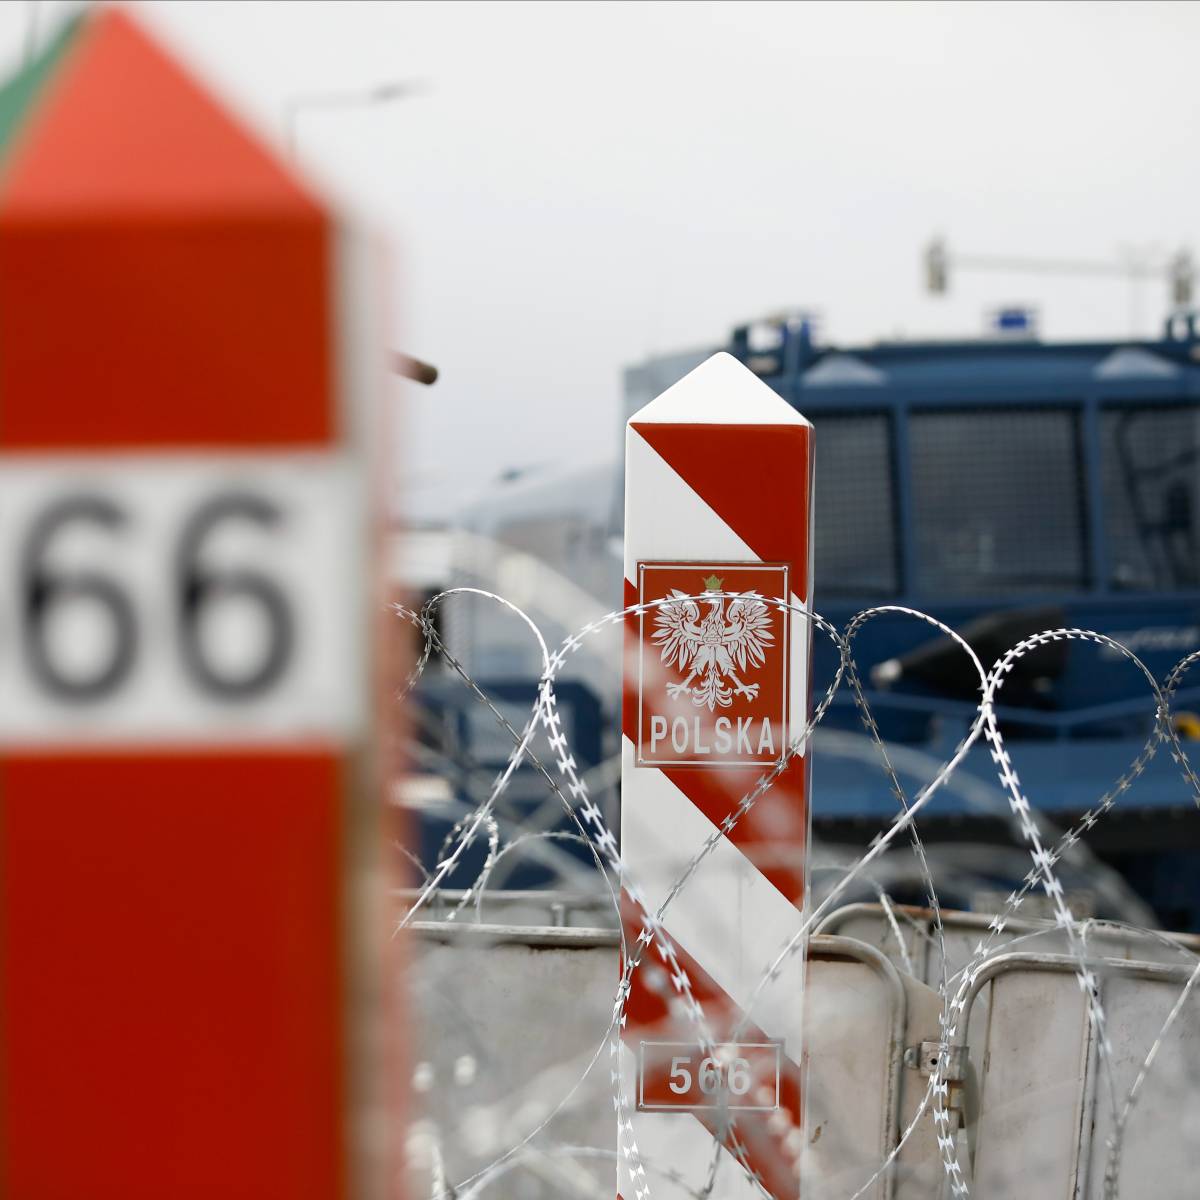 Белоруссия: обстановка на границах накаляется, поляки репетируют блокаду